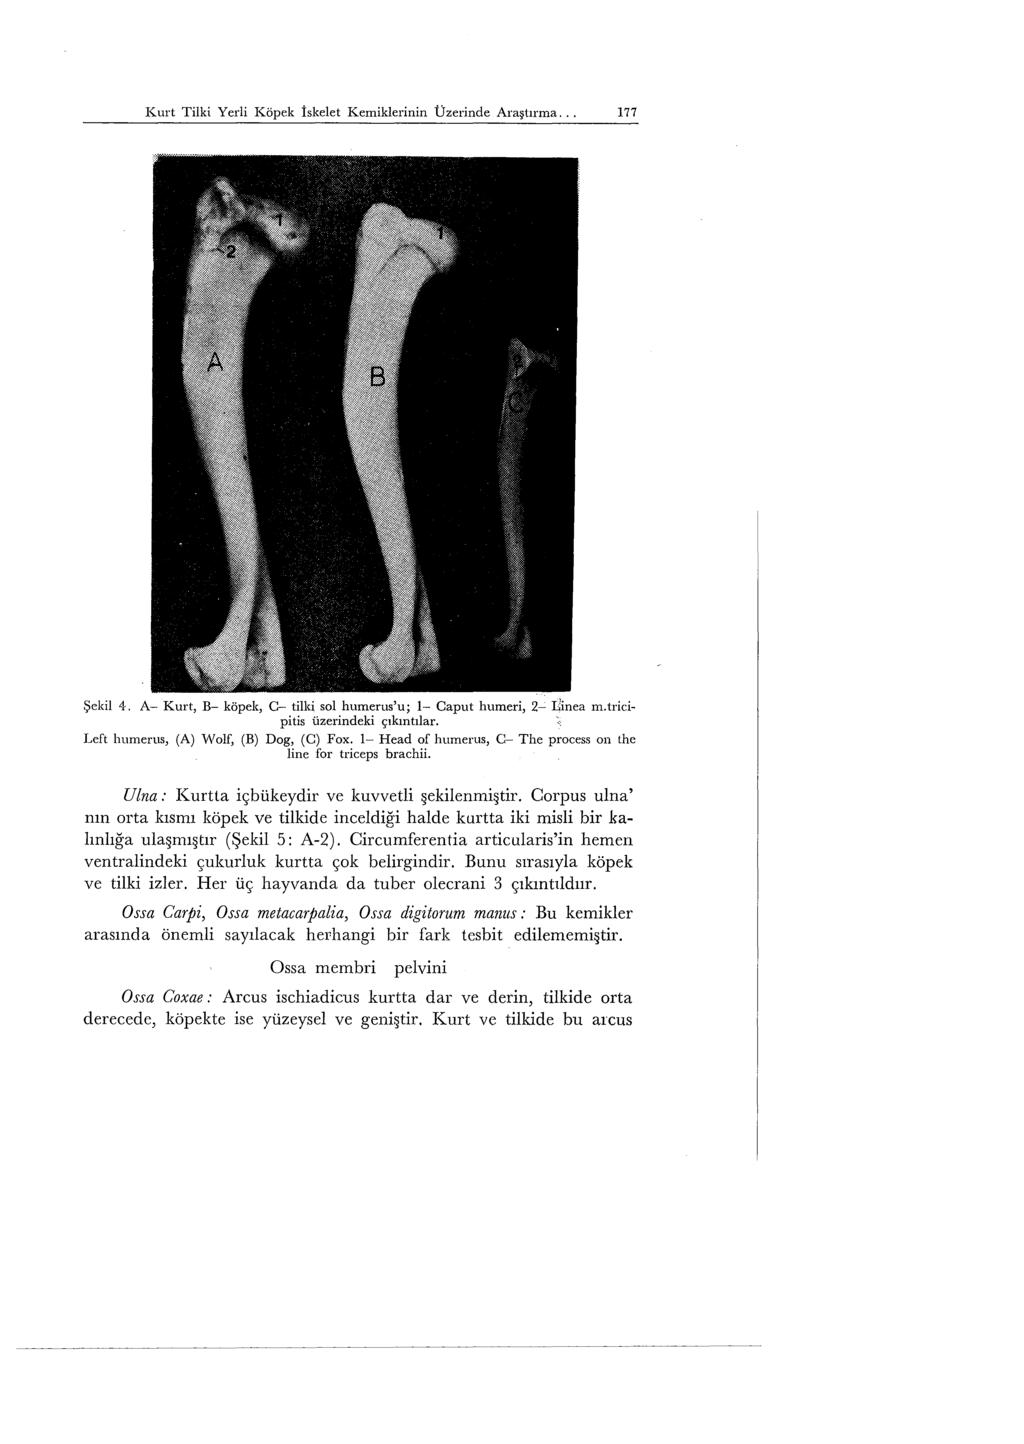 Kurt Tilki Yerli Köpek iskelet Kemiklerinin Üzerinde Araştırma... 177 Şekil 4. A- Kurt, B- köpek, C- tilki sol humerus'u; 1- Caput humeri, 2- Iiinea m.tricipitis üzerindeki çıkıntılar.